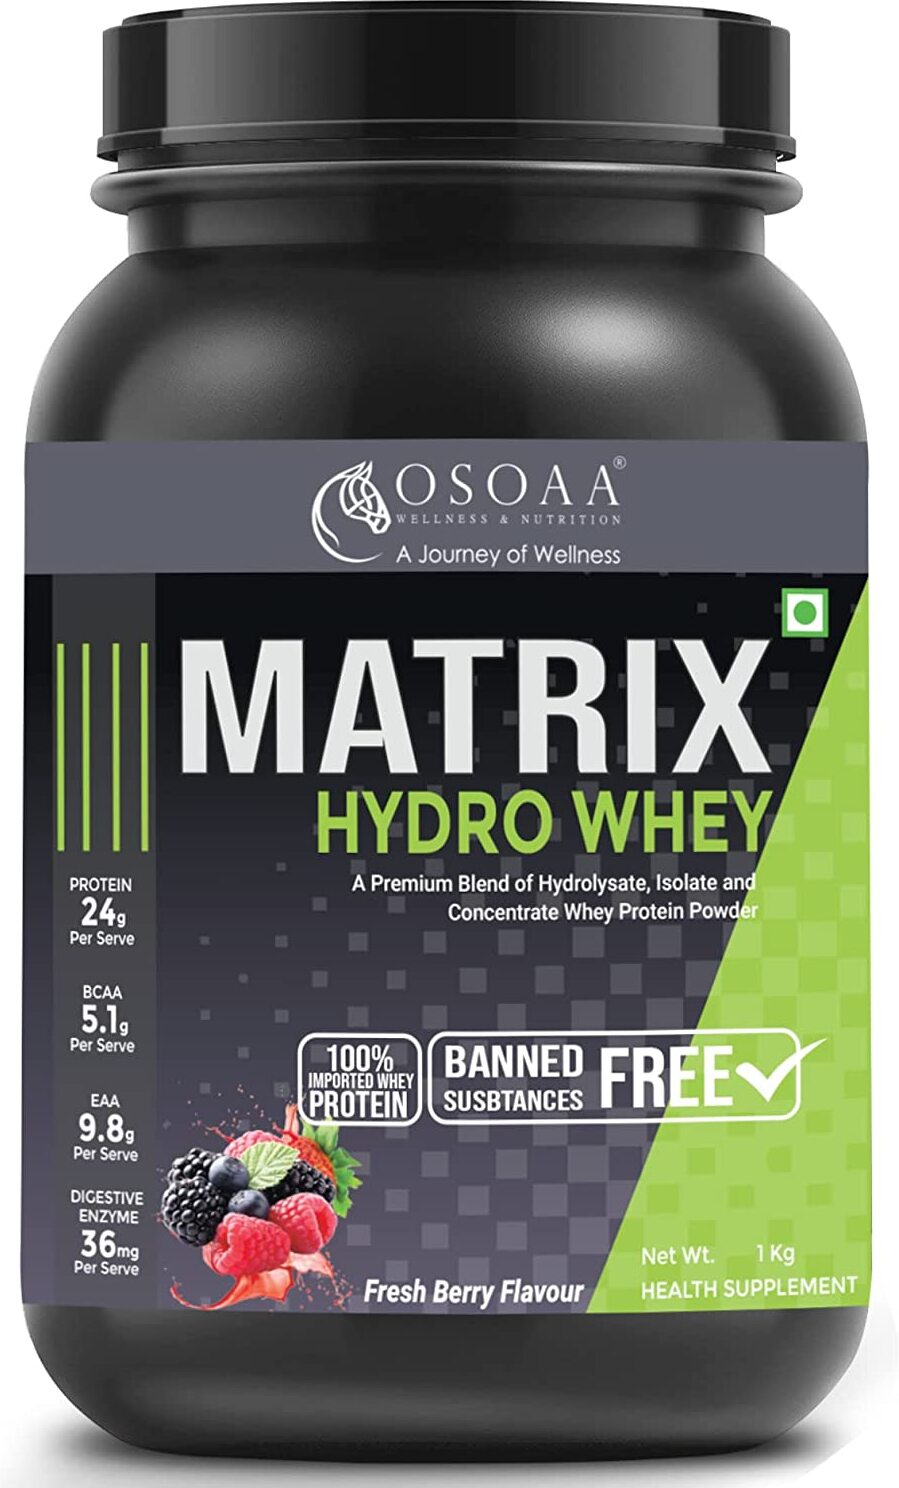 Whey Matrix Hydro Whey Protein Supplement 24g Protein Triblend Weight Management Fresh Berry 1KG